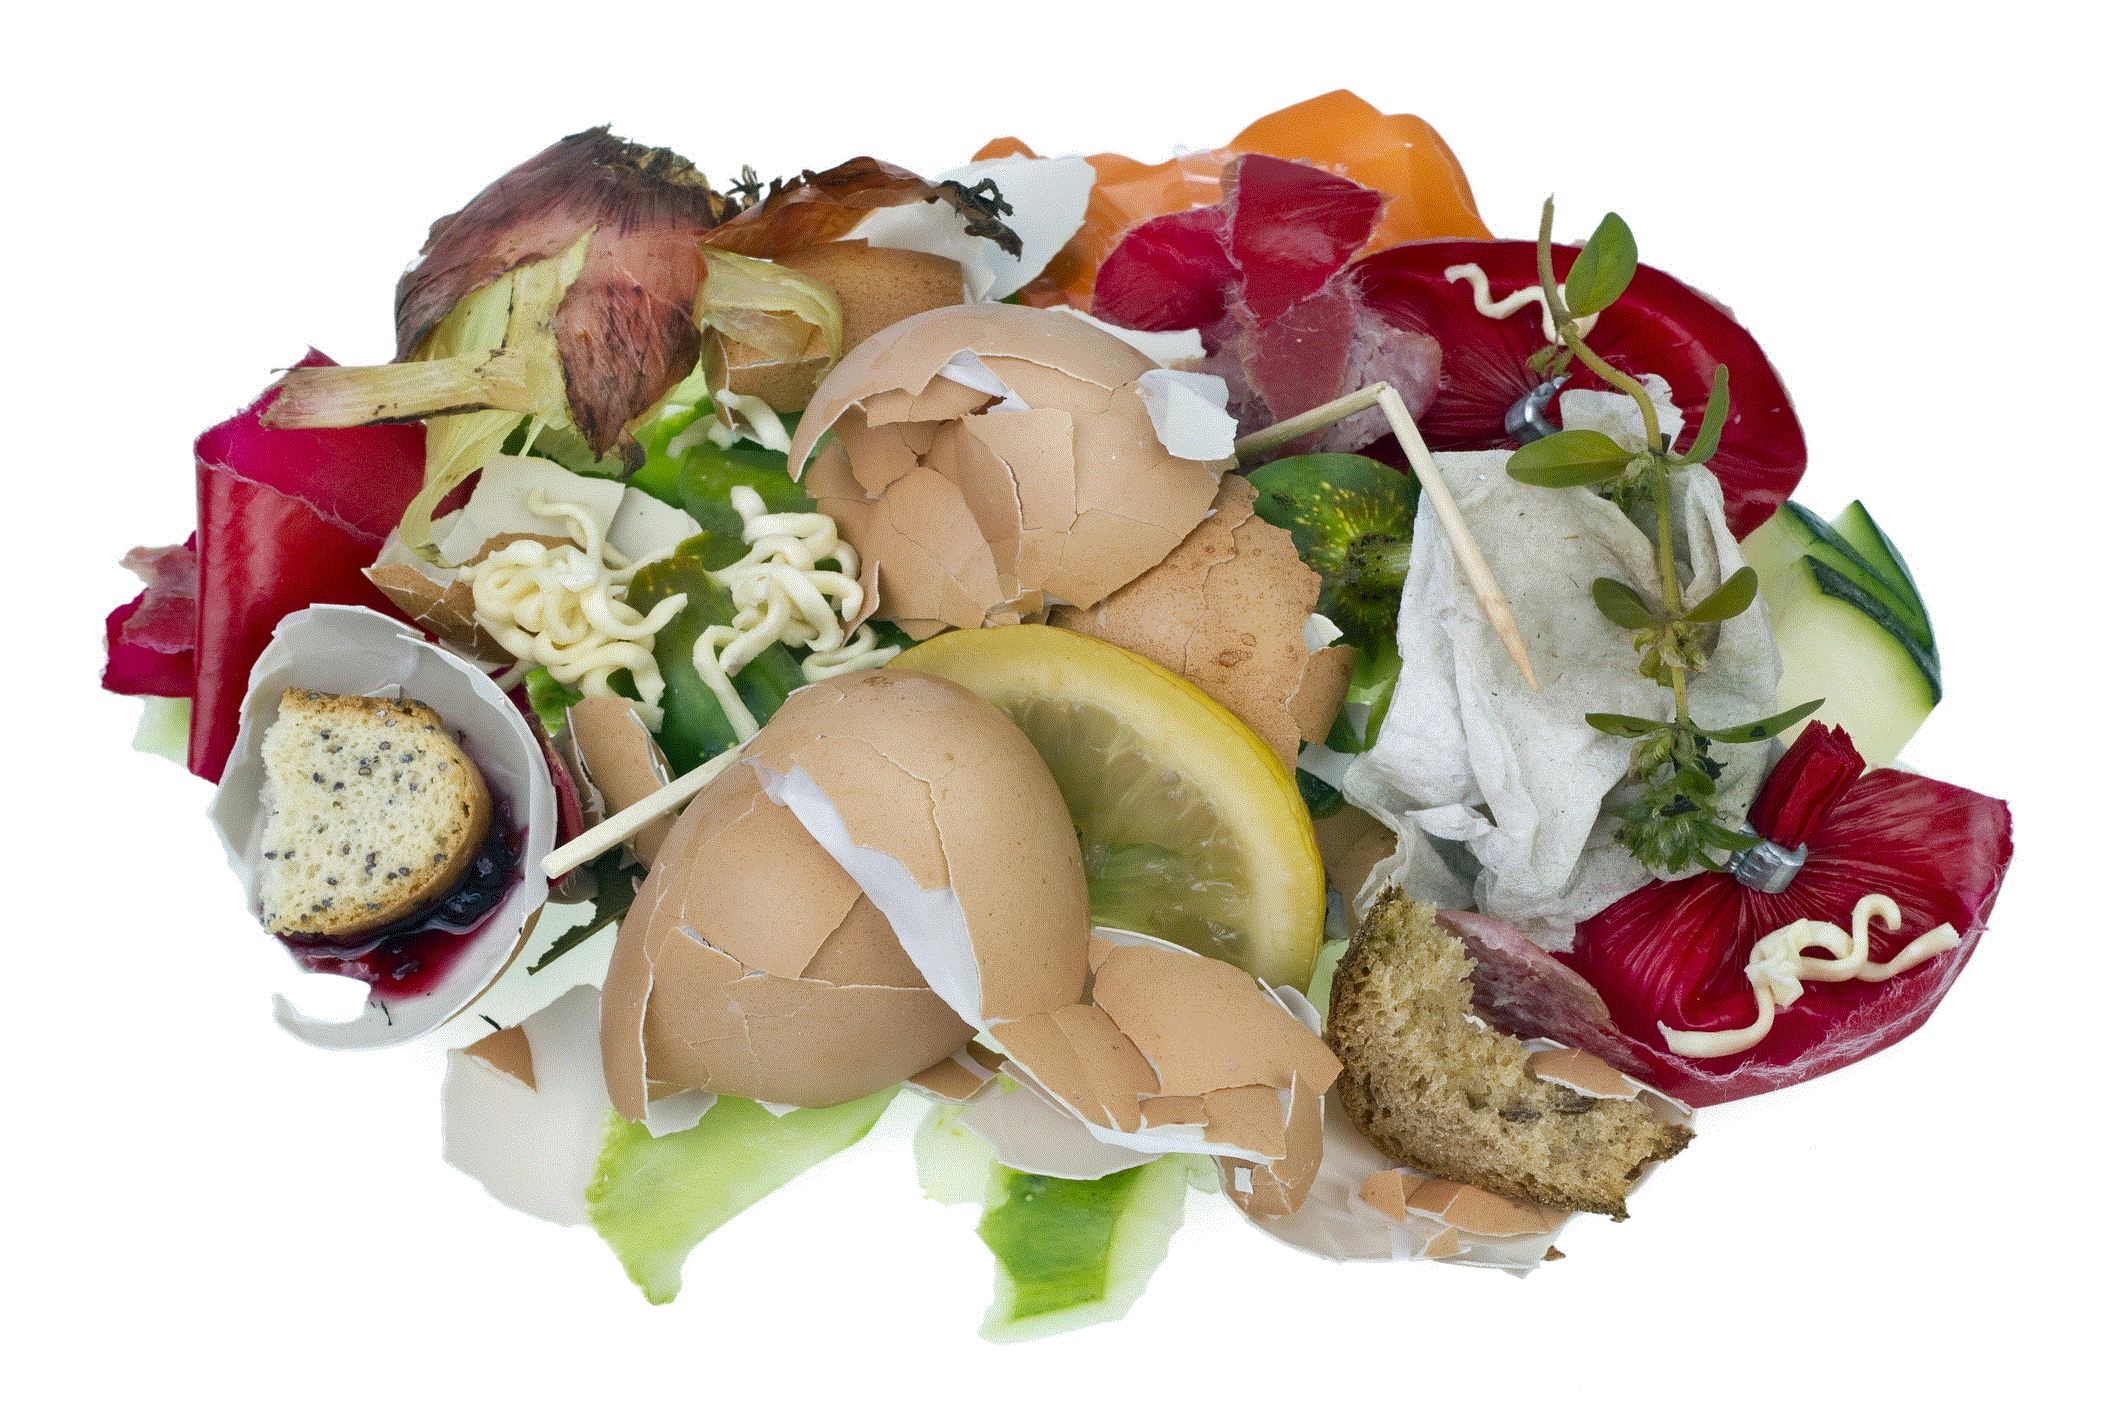 Faire du compost avec nos déchets alimentaires